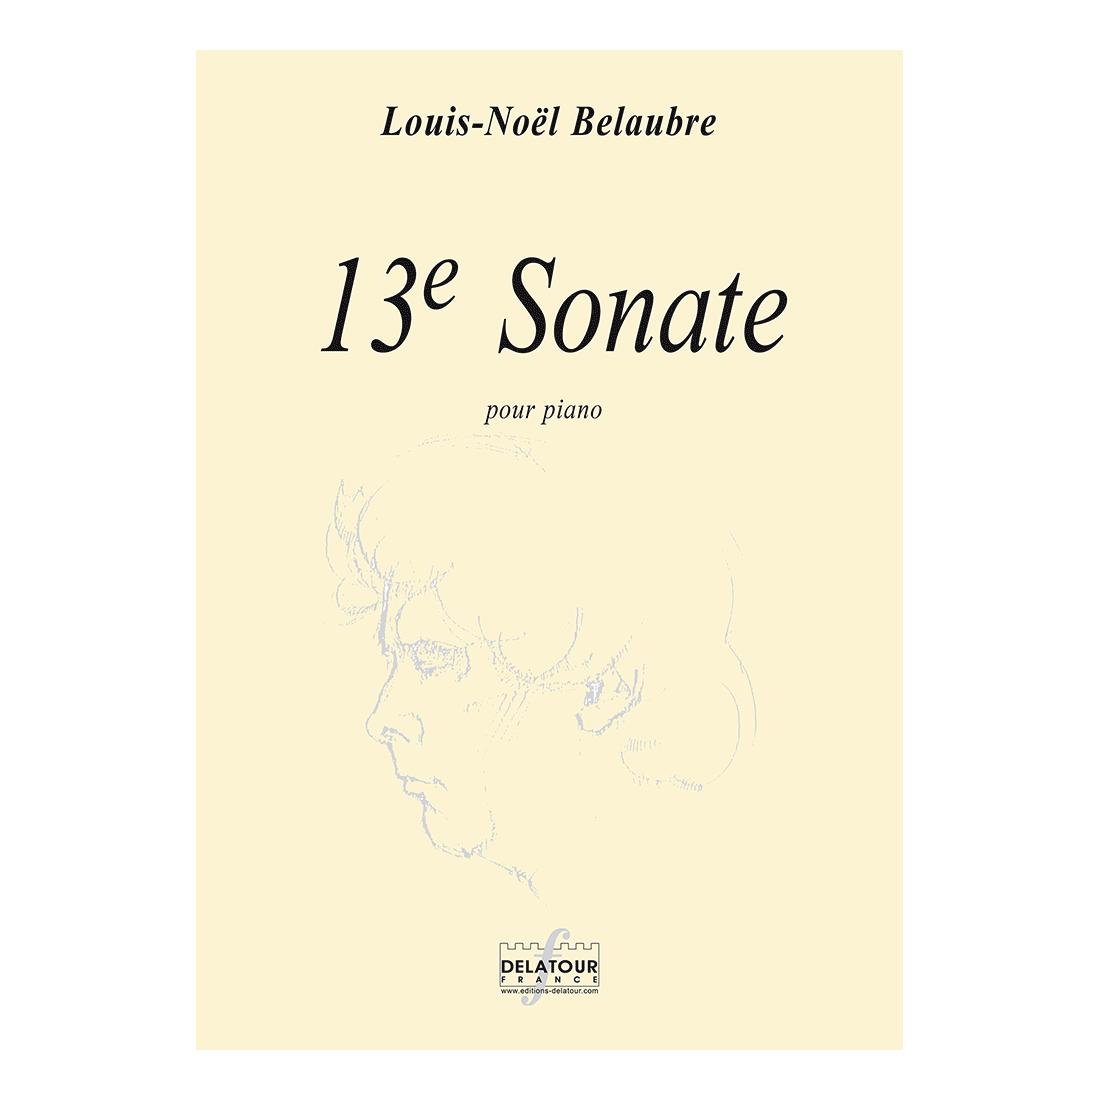 13e sonate for piano